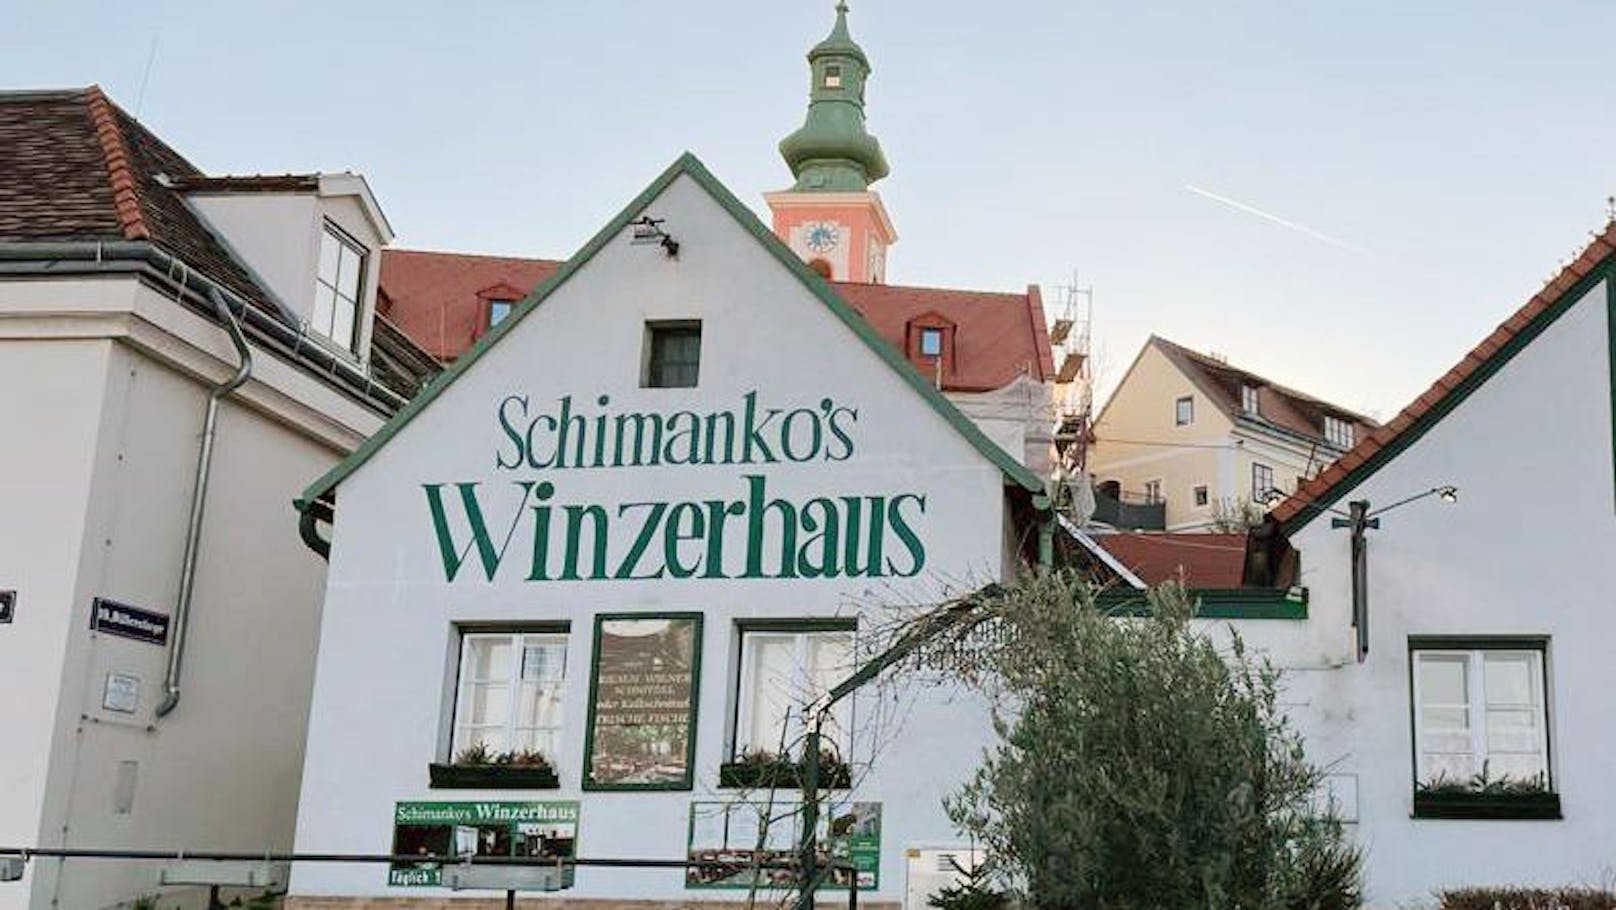 Schimanko's Winzerhaus